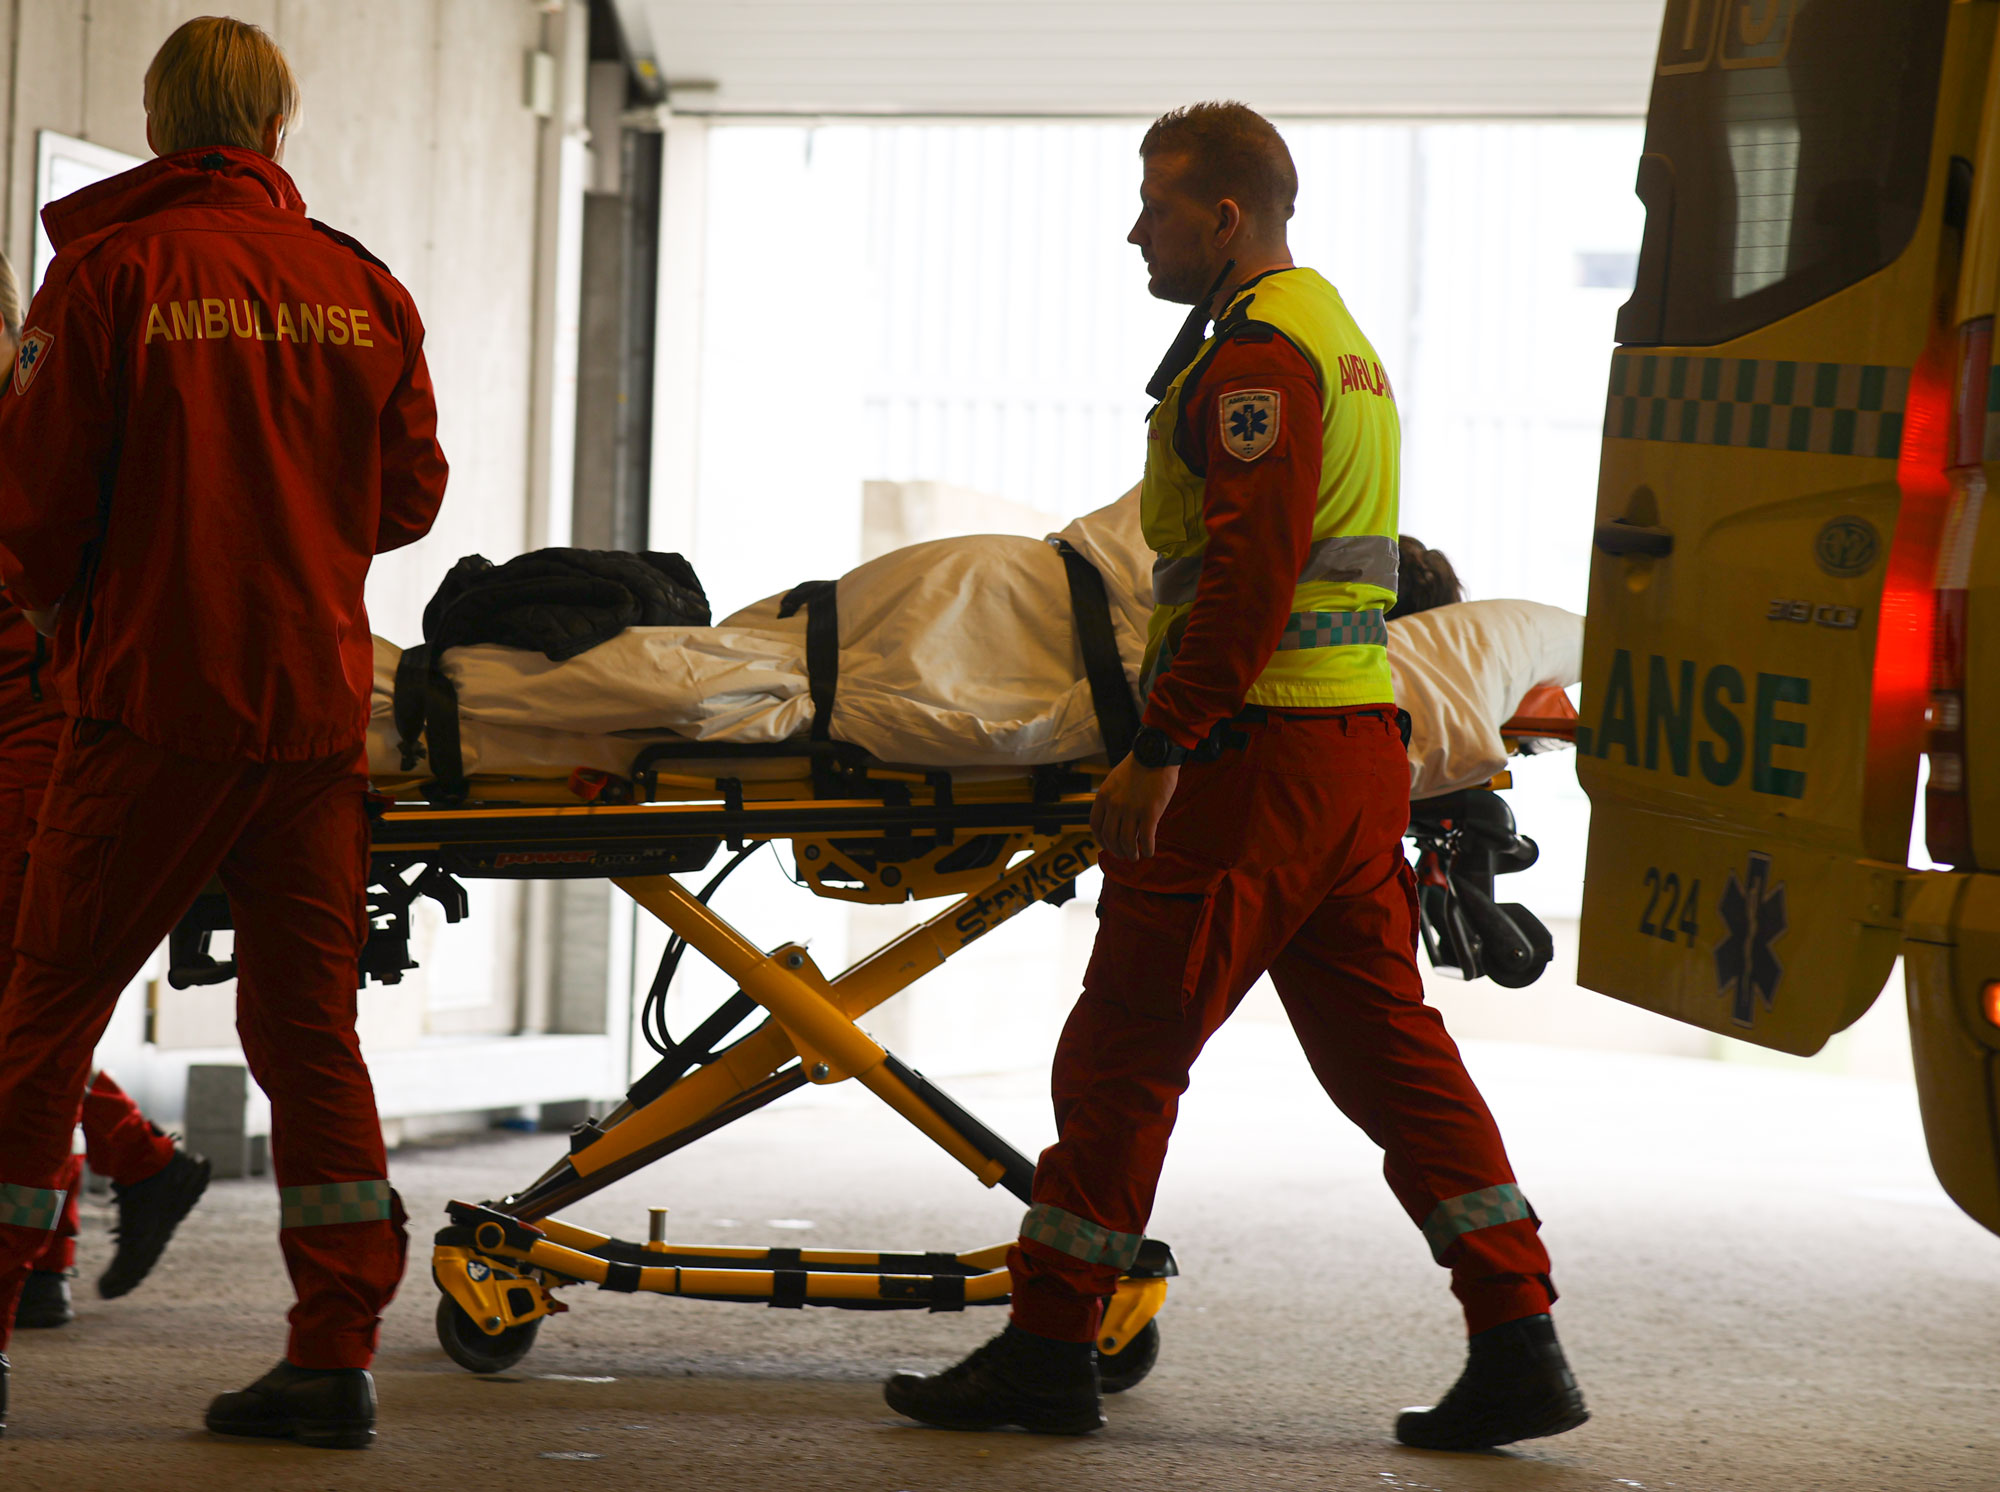 Mange pasienter er undertriagerte . Derfor er det viktig at ambulansepersonell fanger opp flere som har alvorlig skade. Illustrasjonsfoto: Jørn Finsrud.